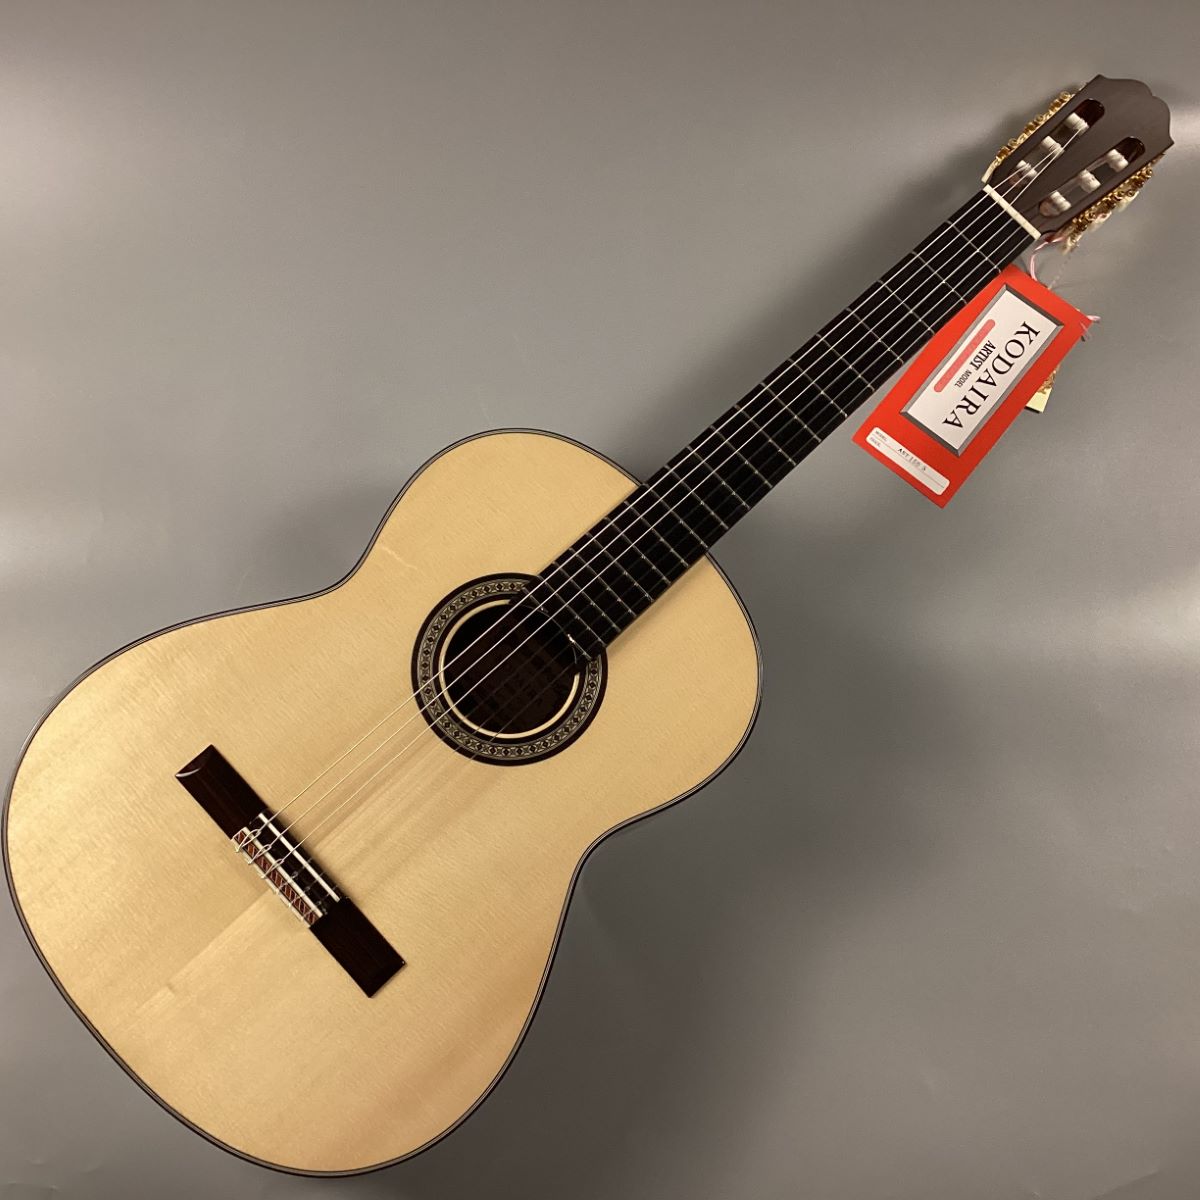 KODAIRA KODAIRA AST-150S 650mm クラシックギター【現物画像】 小平